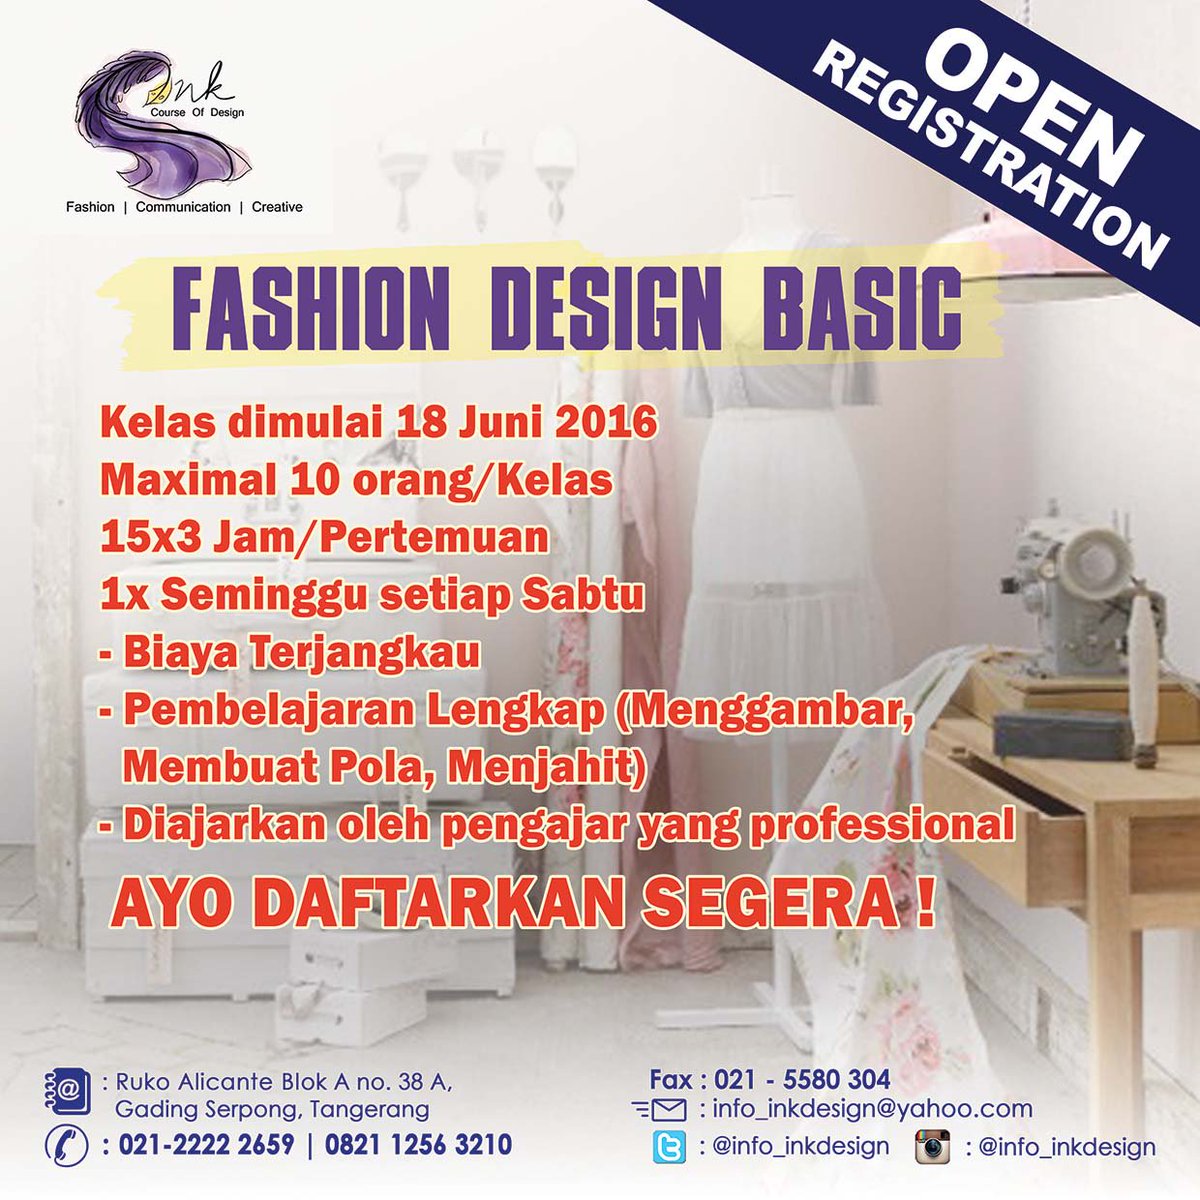 #kursusfashion #kursusjahit #fashiondesign #fashionindonesia #kursusgambar #fashiondrawing #jahit #kursusfashion